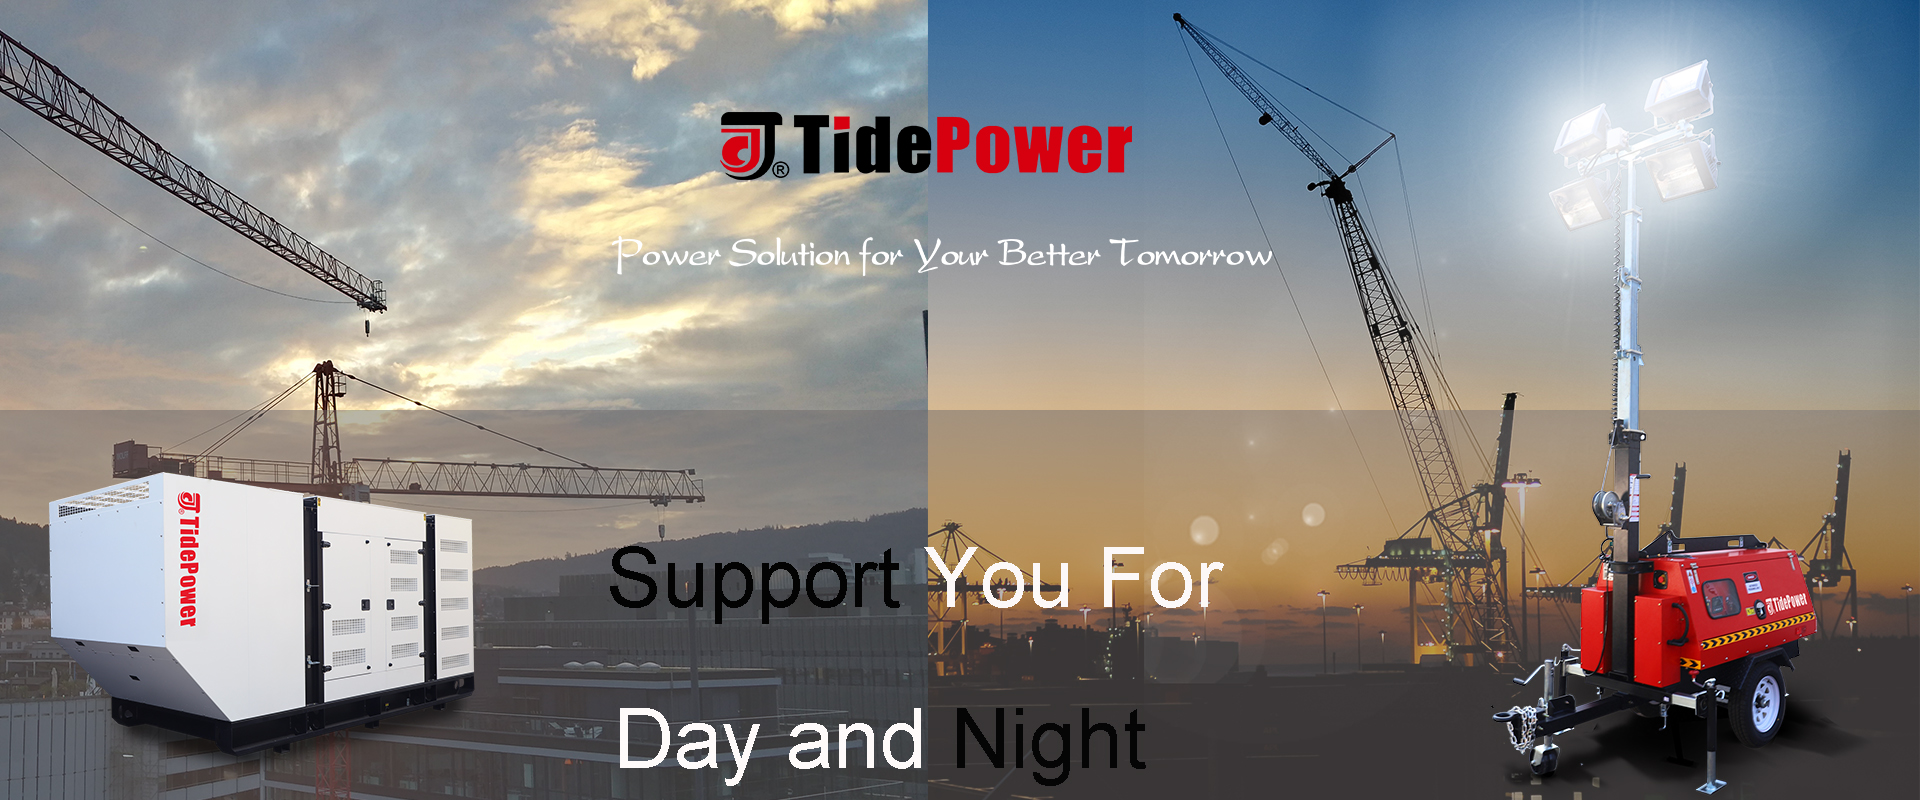 tidepower,diesel generator,lighting tower